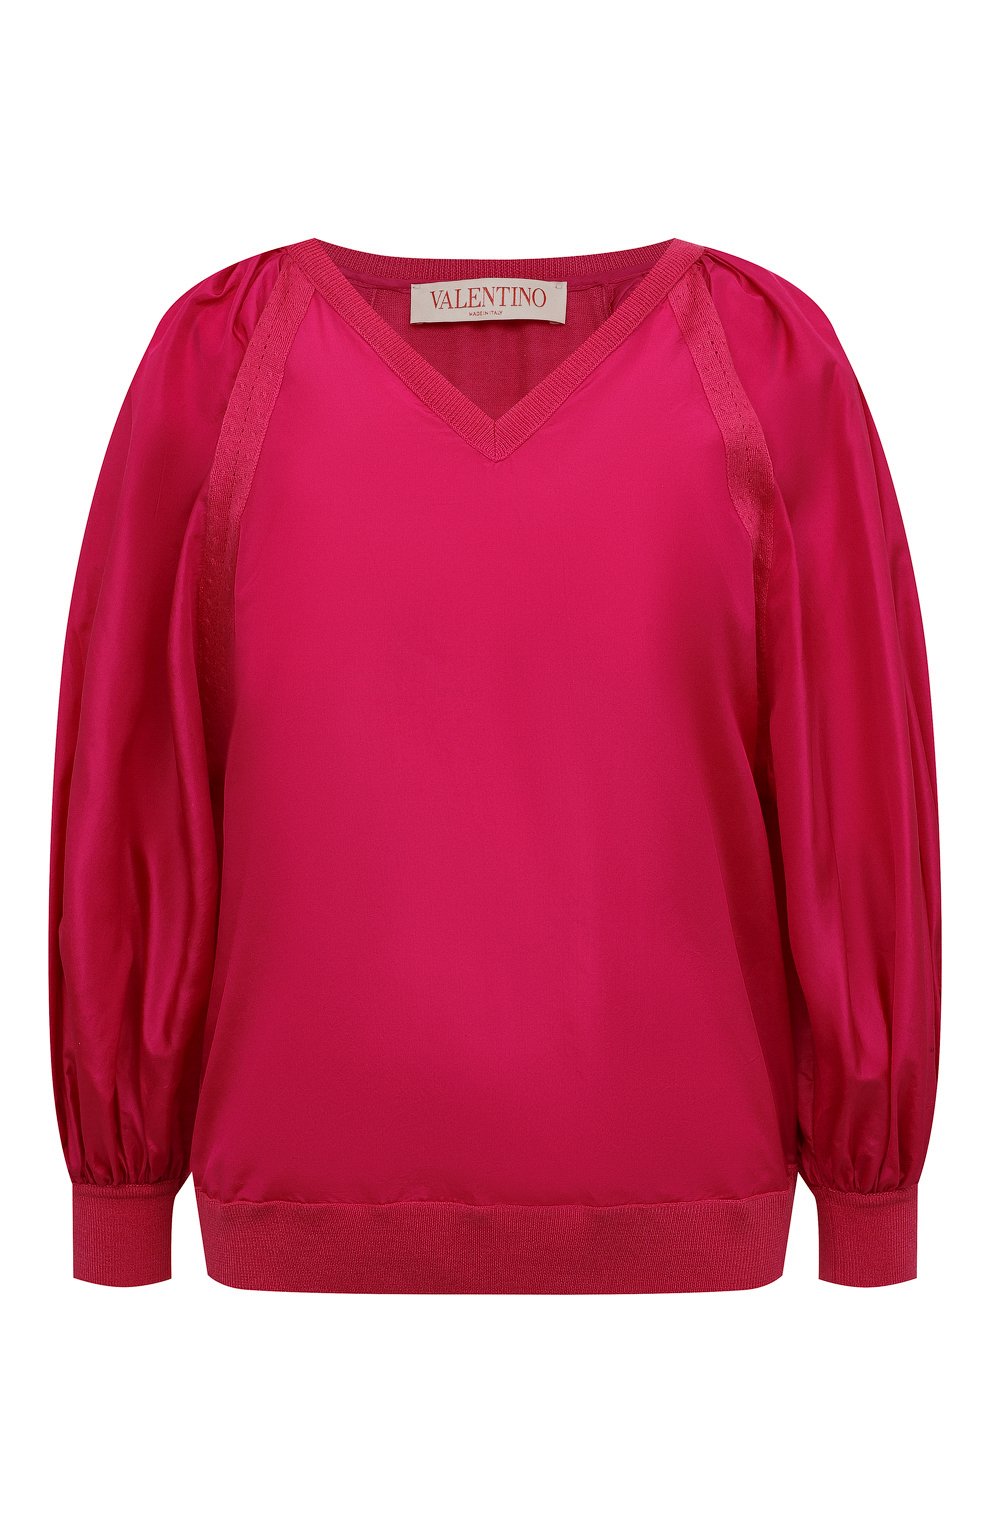 Женская фуксия шелковая блузка VALENTINO купить в интернет-магазине ЦУМ,арт. XB0KC33Q76J